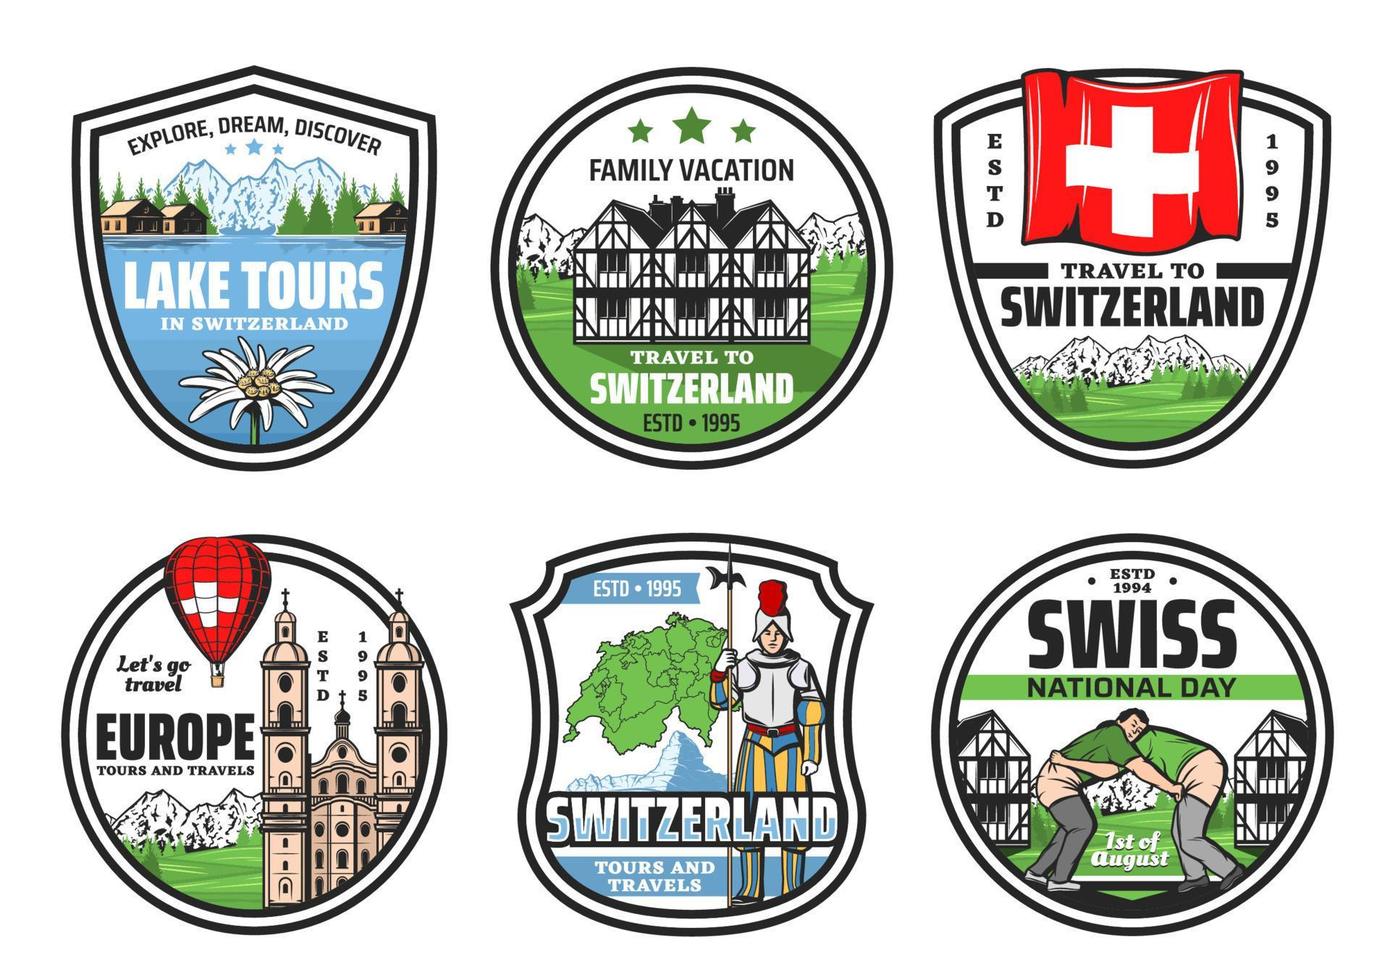 Welkom naar Zwitserland, stad mijlpaal tours pictogrammen vector